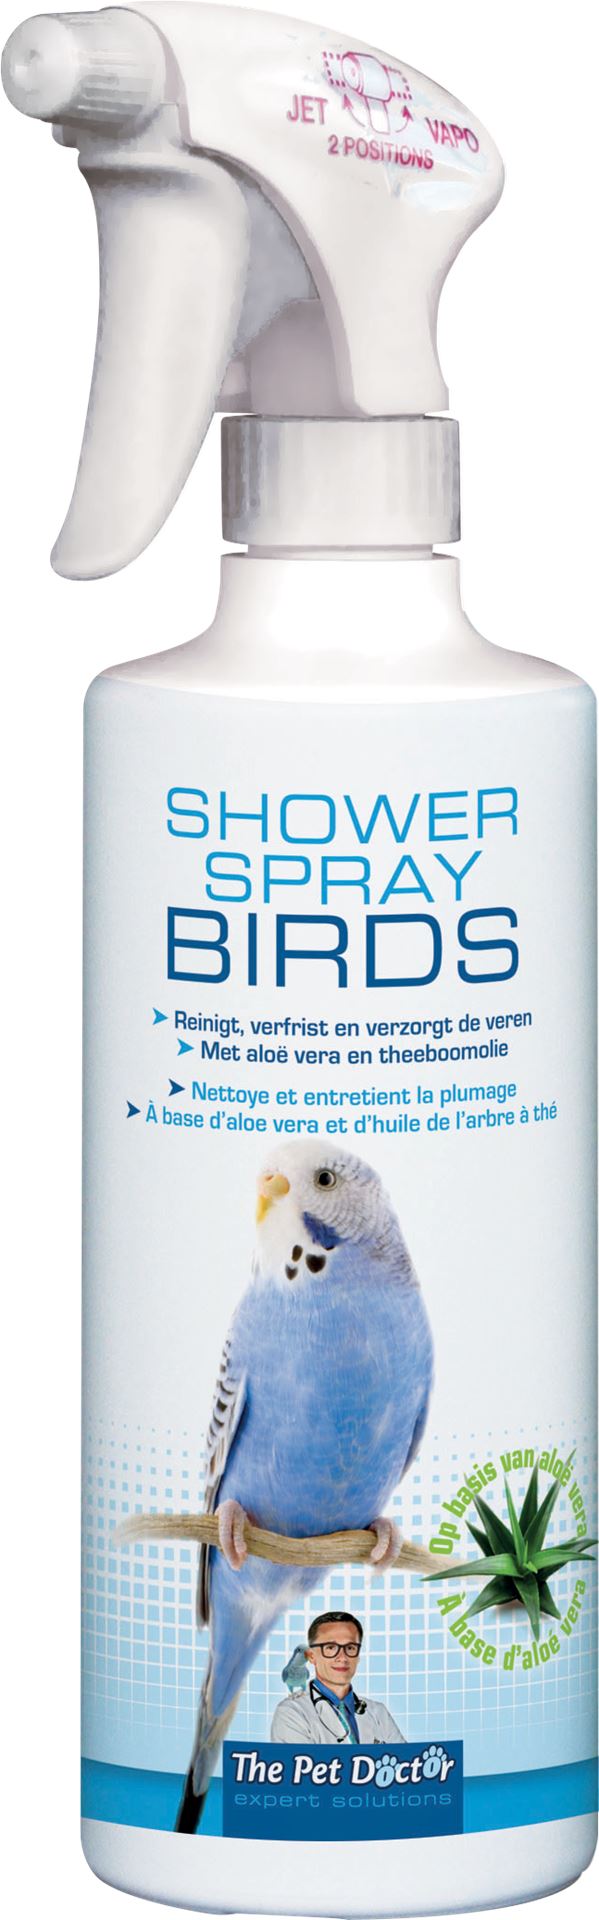 Shower-spray-birds-500ml-reinigt-verfrist-en-verzorgt-de-veren